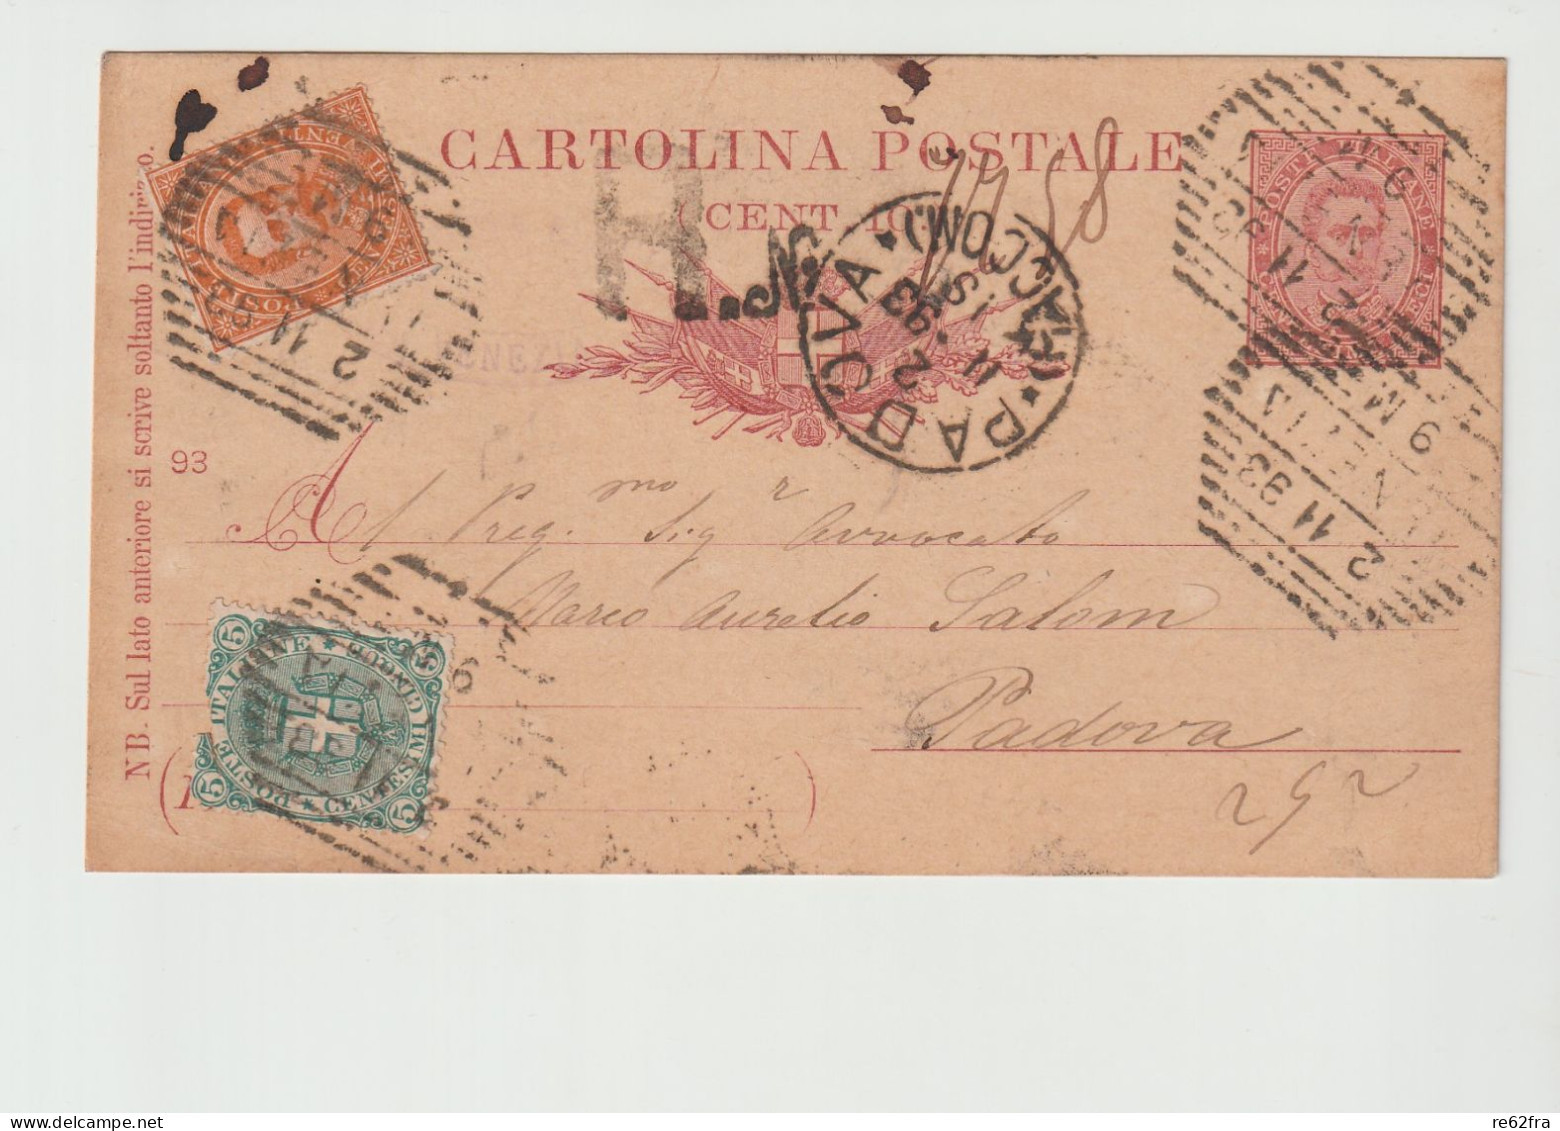 Umberto I° Intero Postale C.10-93, Spedita Nel 1893 Con Raccomandata E Aggiunta Di Francobolli Per C.25 - Stamped Stationery